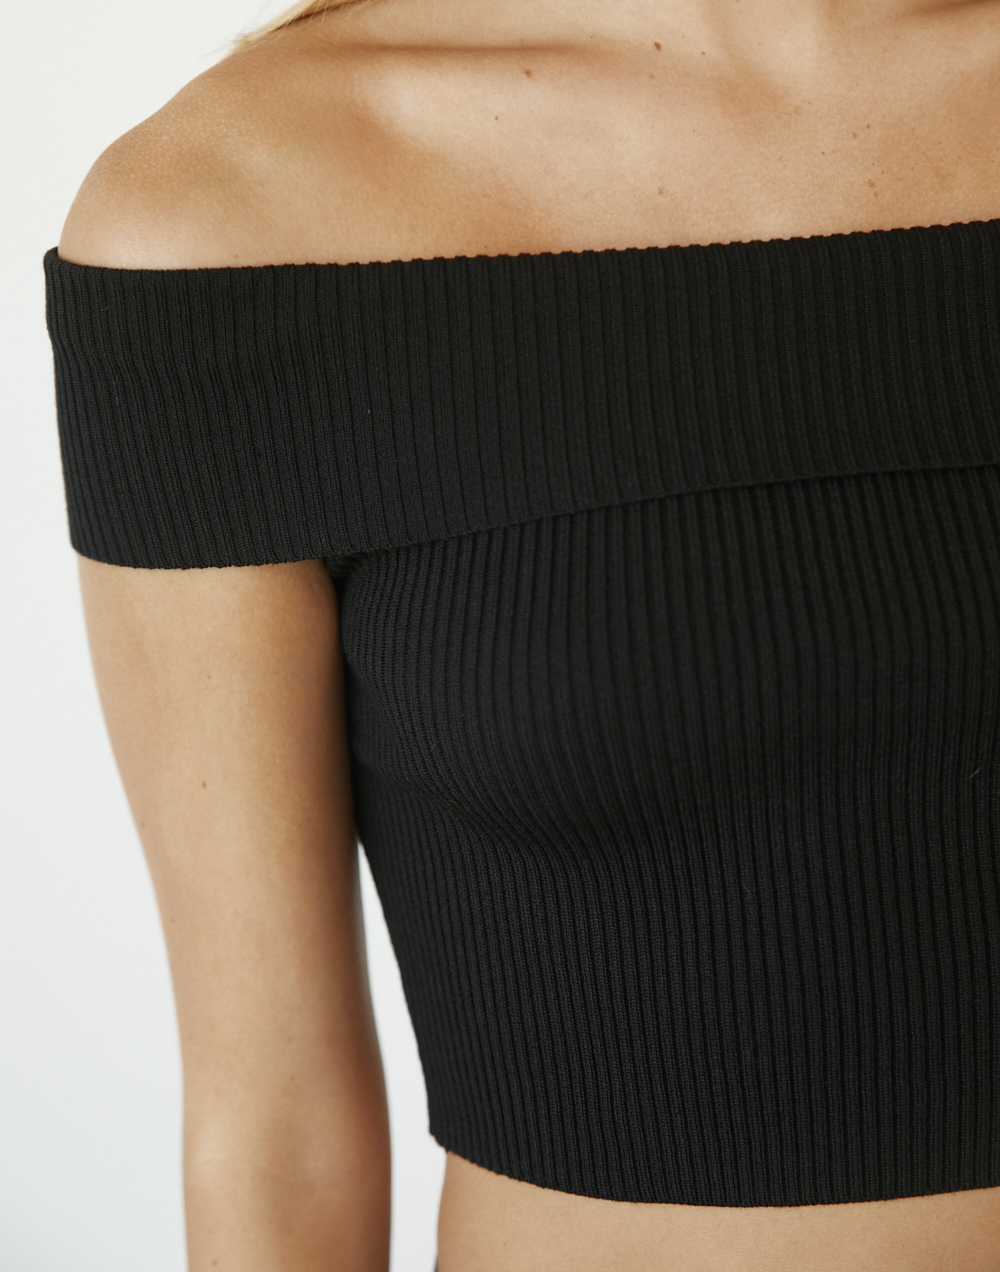 Kallista Crop Top (Black) - Off The Shoulder Crop Top - Women's Top - Charcoal Clothing